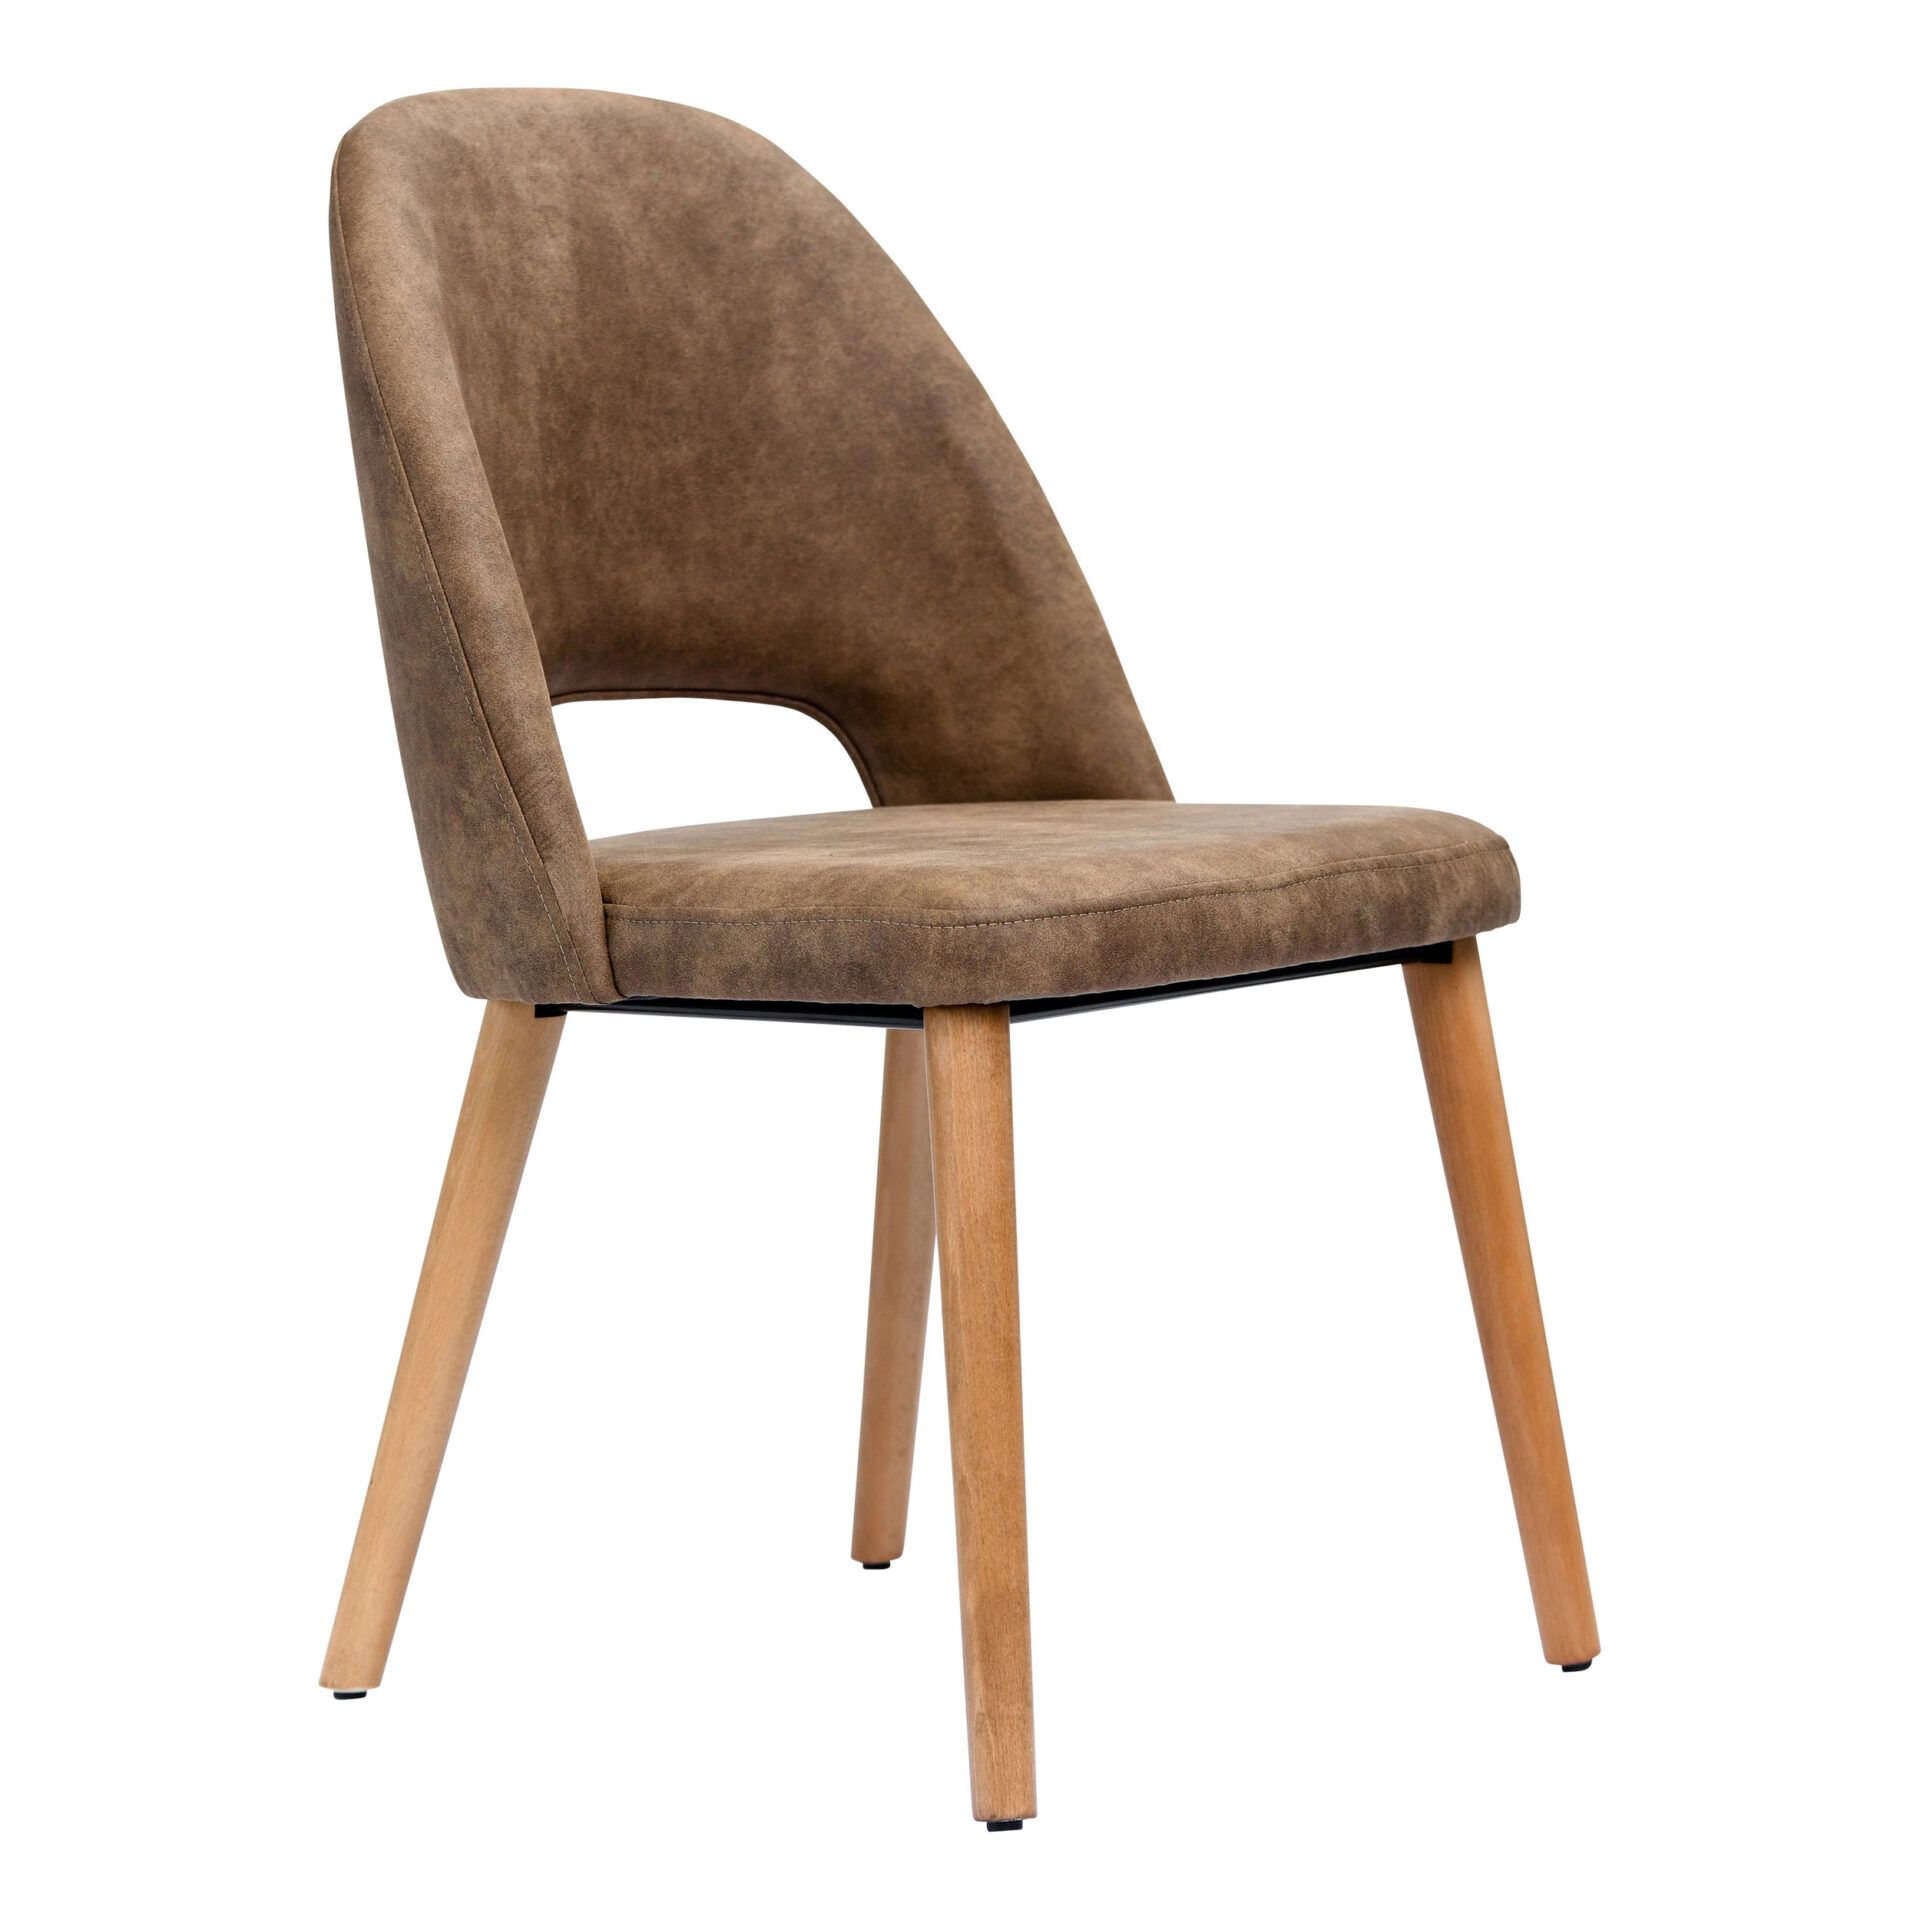 Semifreddo Chair - Trojan Oak Legs/Mocha Fabric